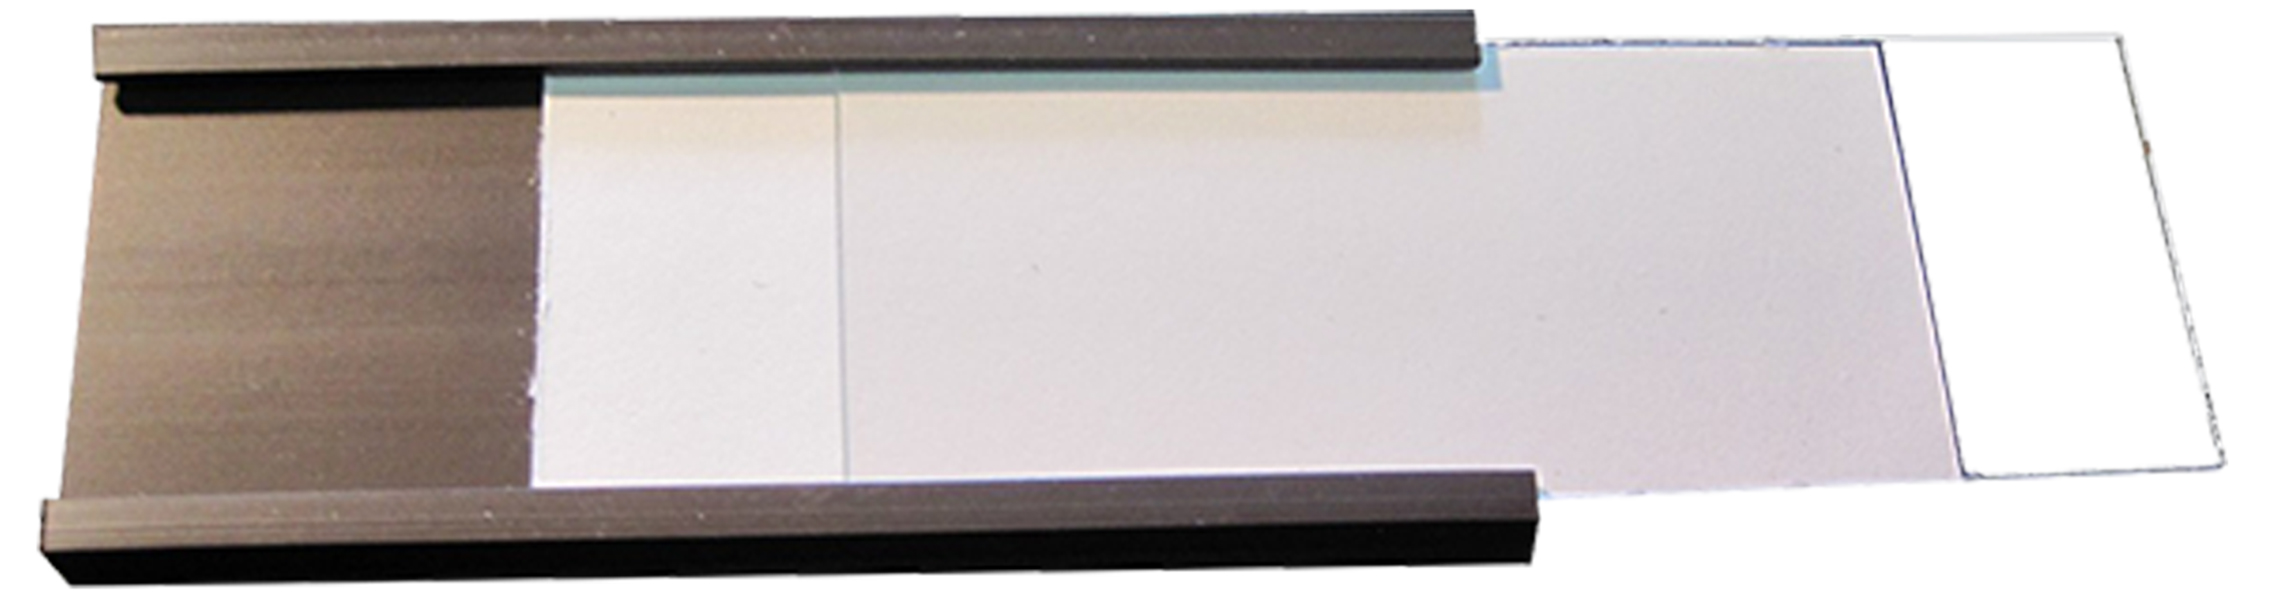 C-Profilé Magnétique Porte-Etiquette Profil C Magnétique,étiquettes aimanté Aimant Aimants Magnet